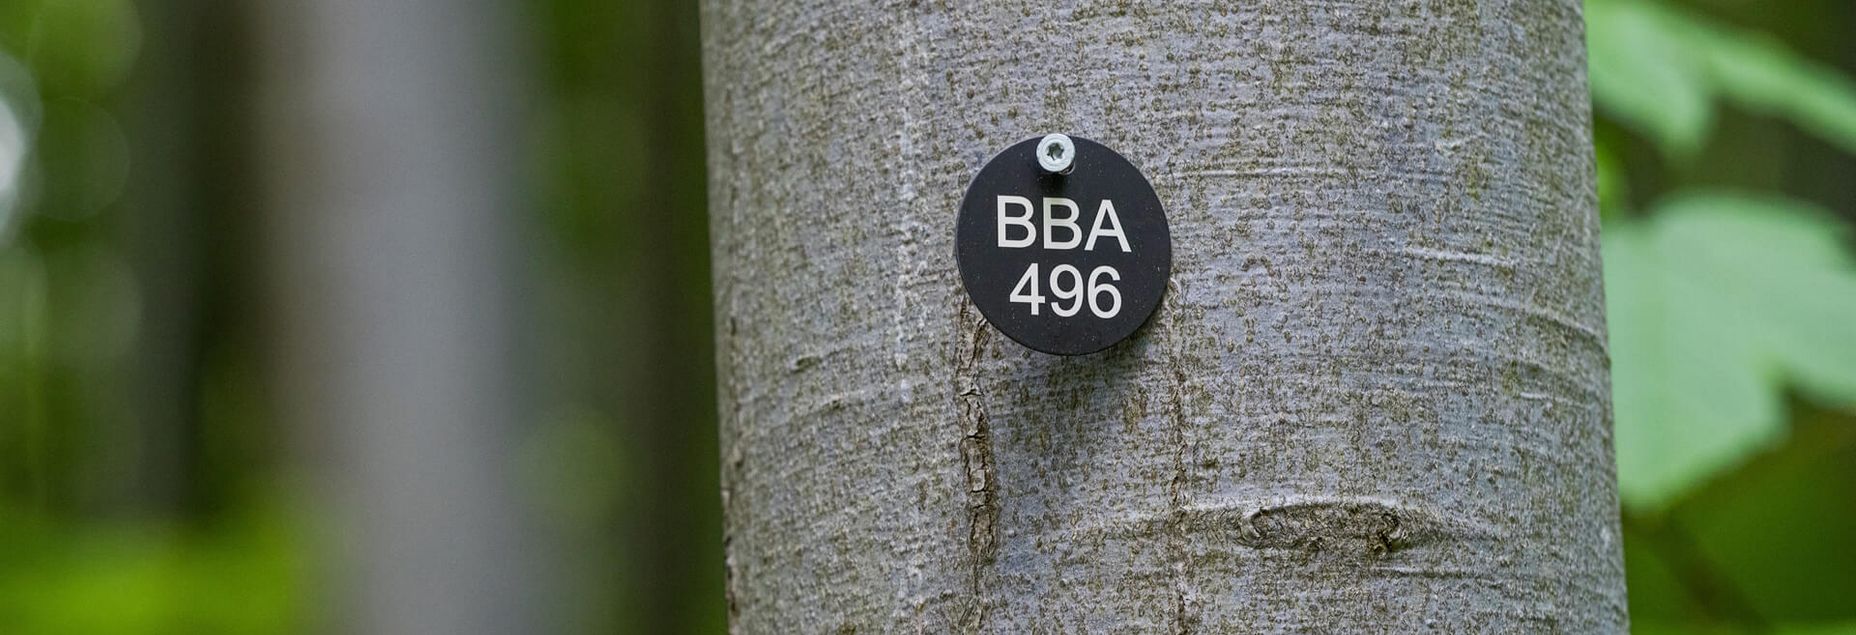 Baum BBA 496 - Plakette